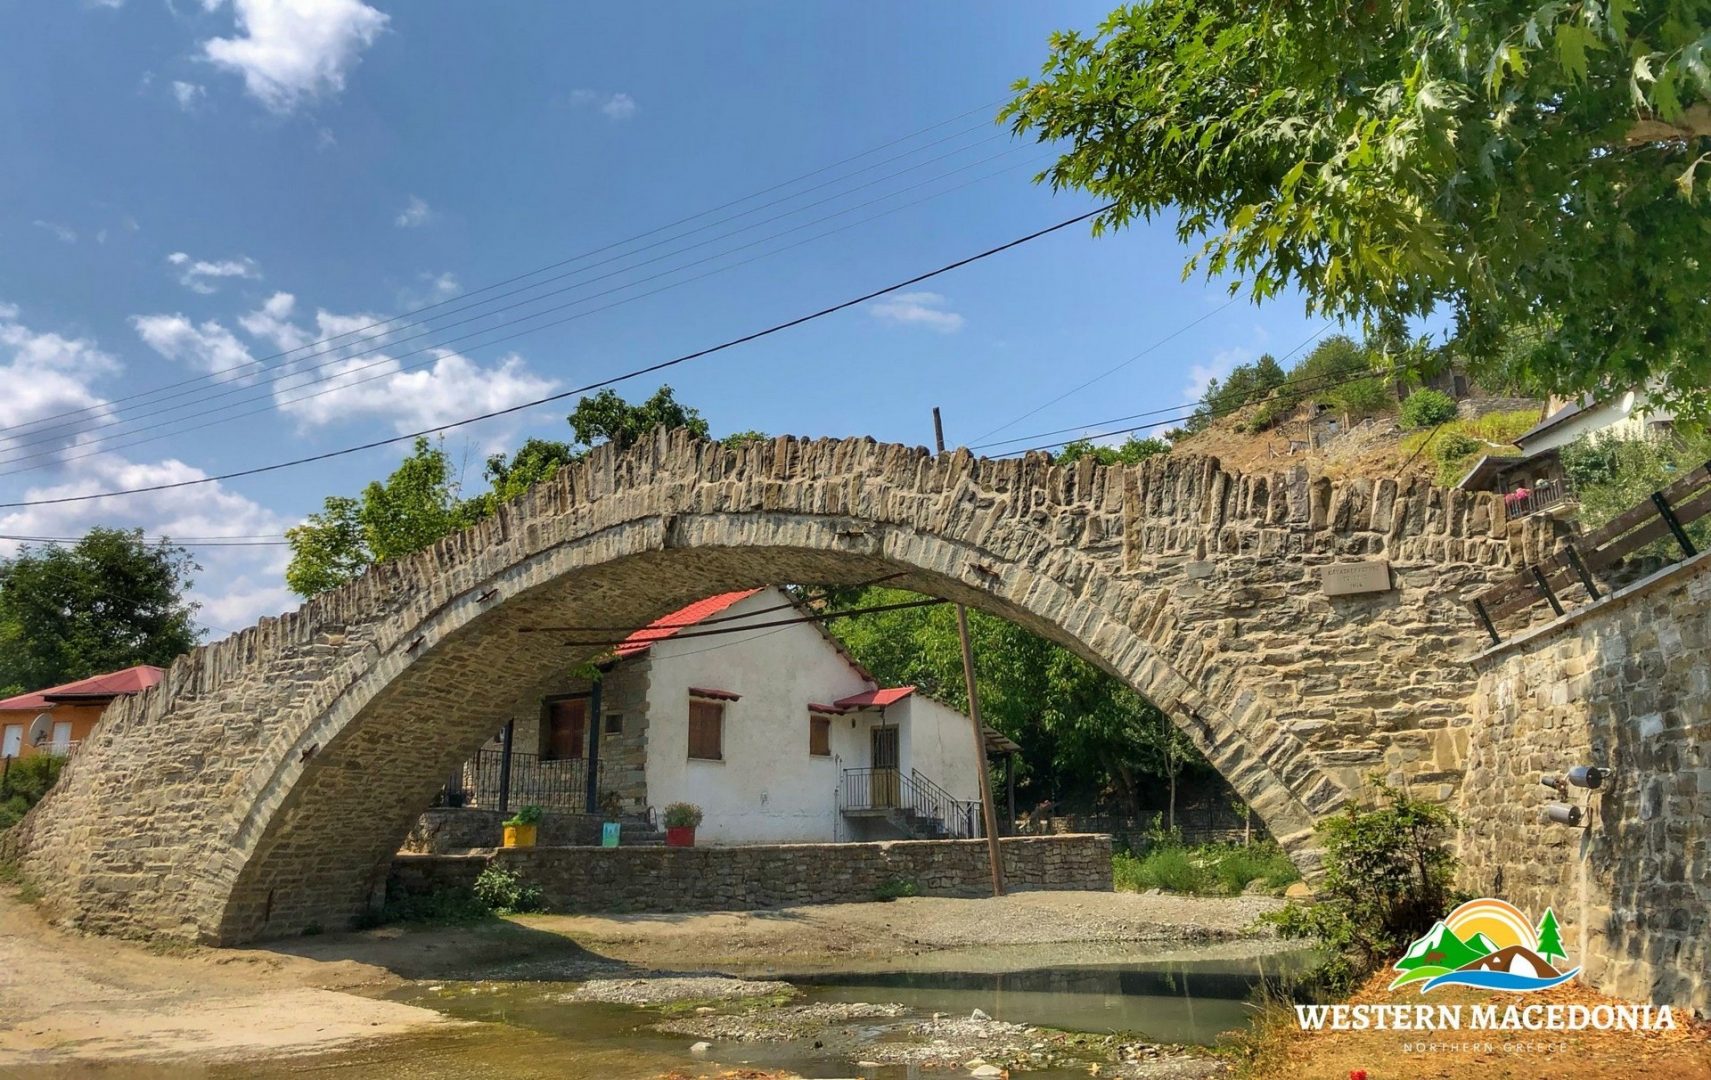 ΔΟΤΣΙΚΟ ΓΡΕΒΕΝΩΝ - Πρόκειται για ένα πέτρινο παραδοσιακό χωριό με  ένα πανέμορφο μονότοξο πετρόκτιστο γεφύρι 3